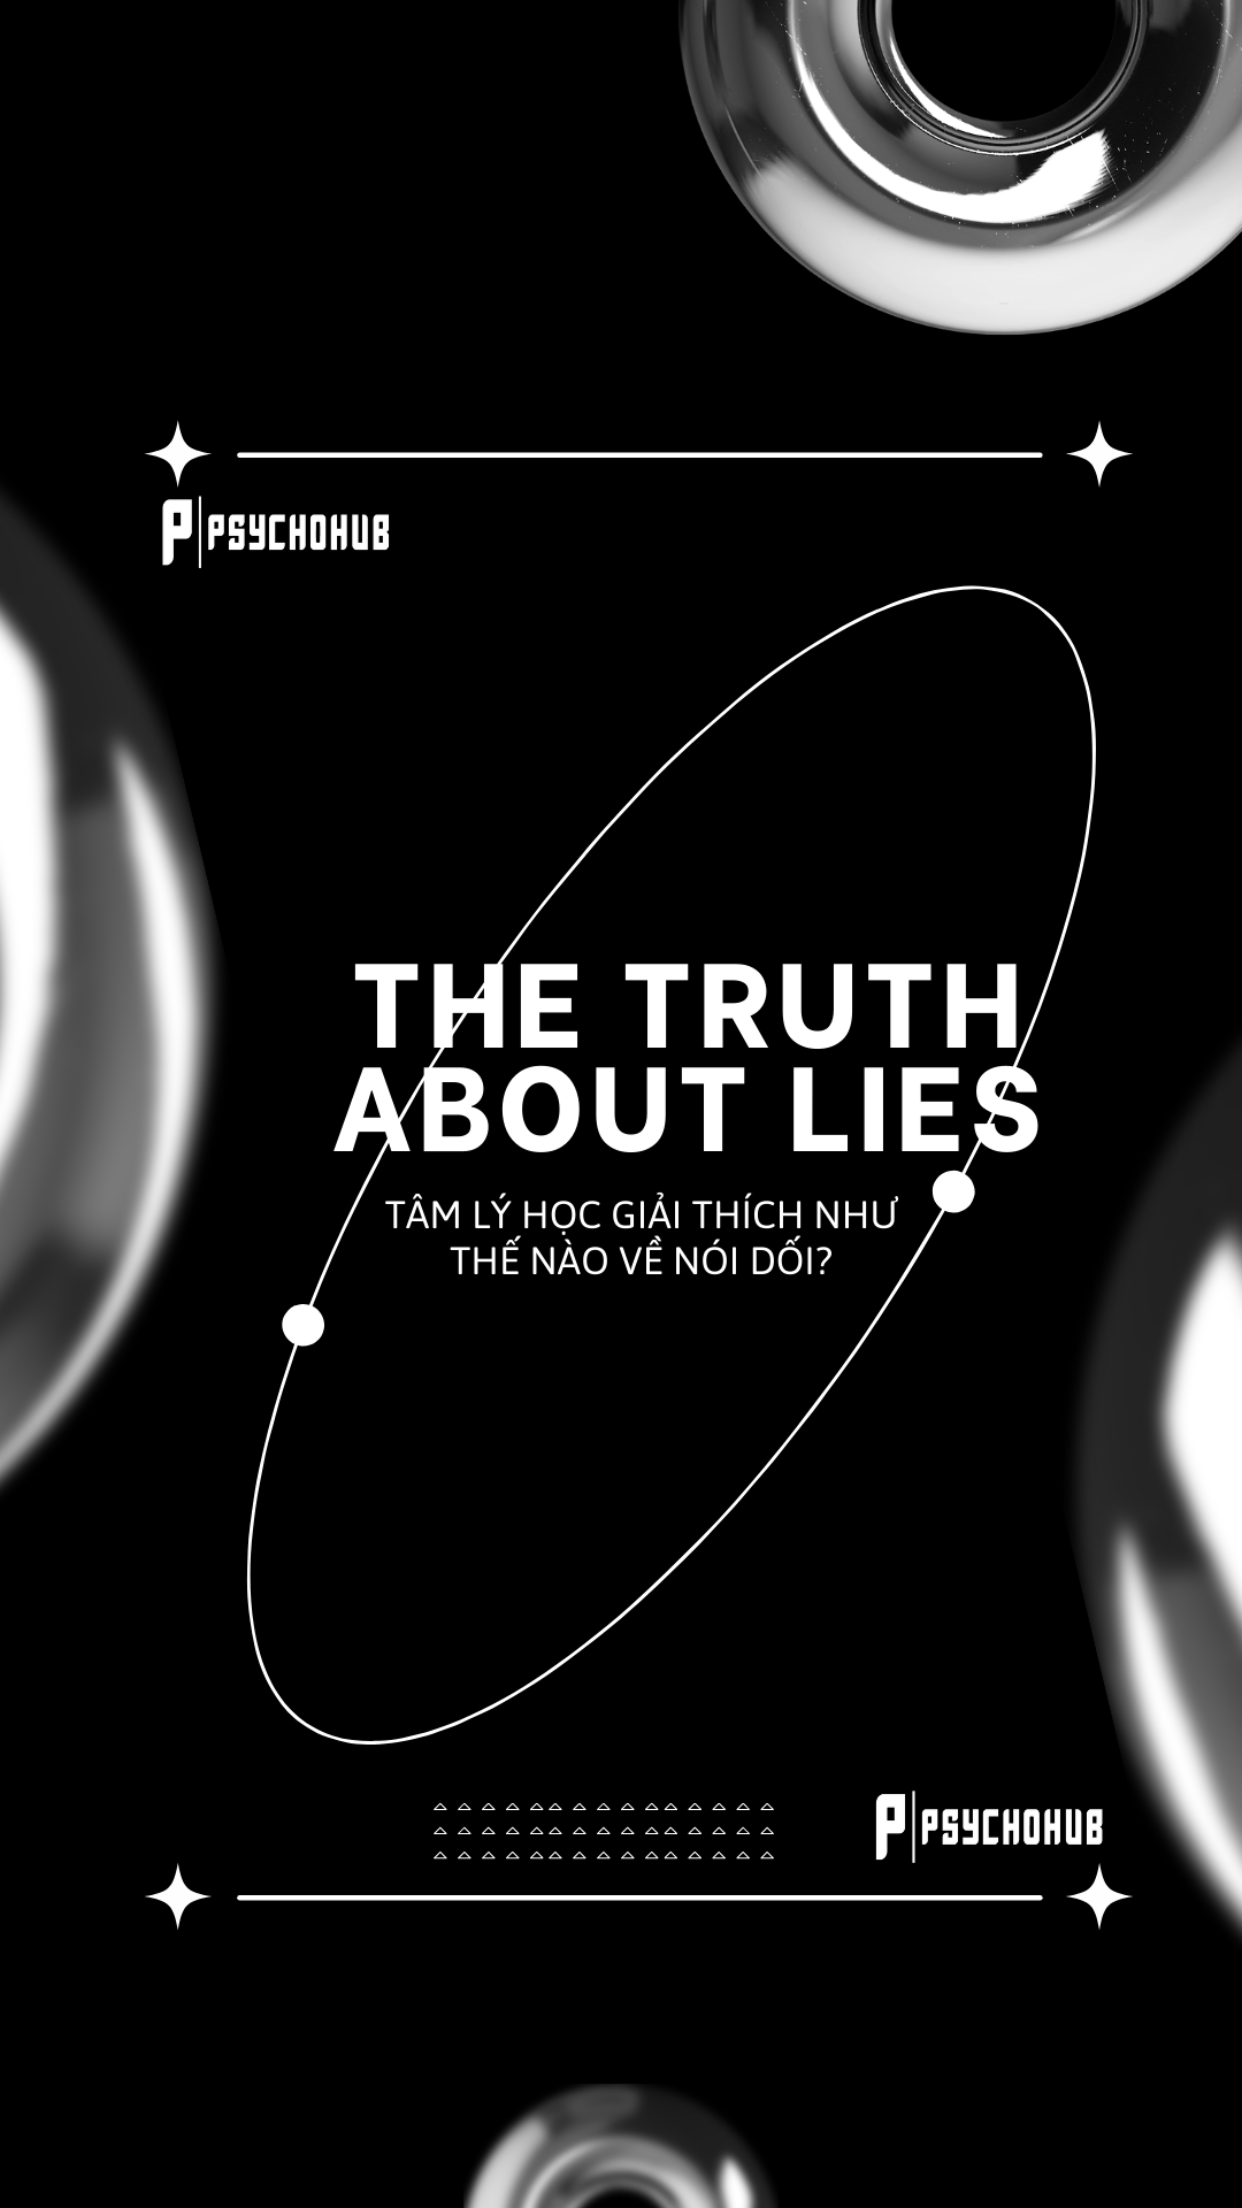 [PSYCHOHUB] THE TRUTH ABOUT LIES - TÂM LÝ HỌC GIẢI THÍCH NHƯ THẾ NÀO VỀ NÓI DỐI?